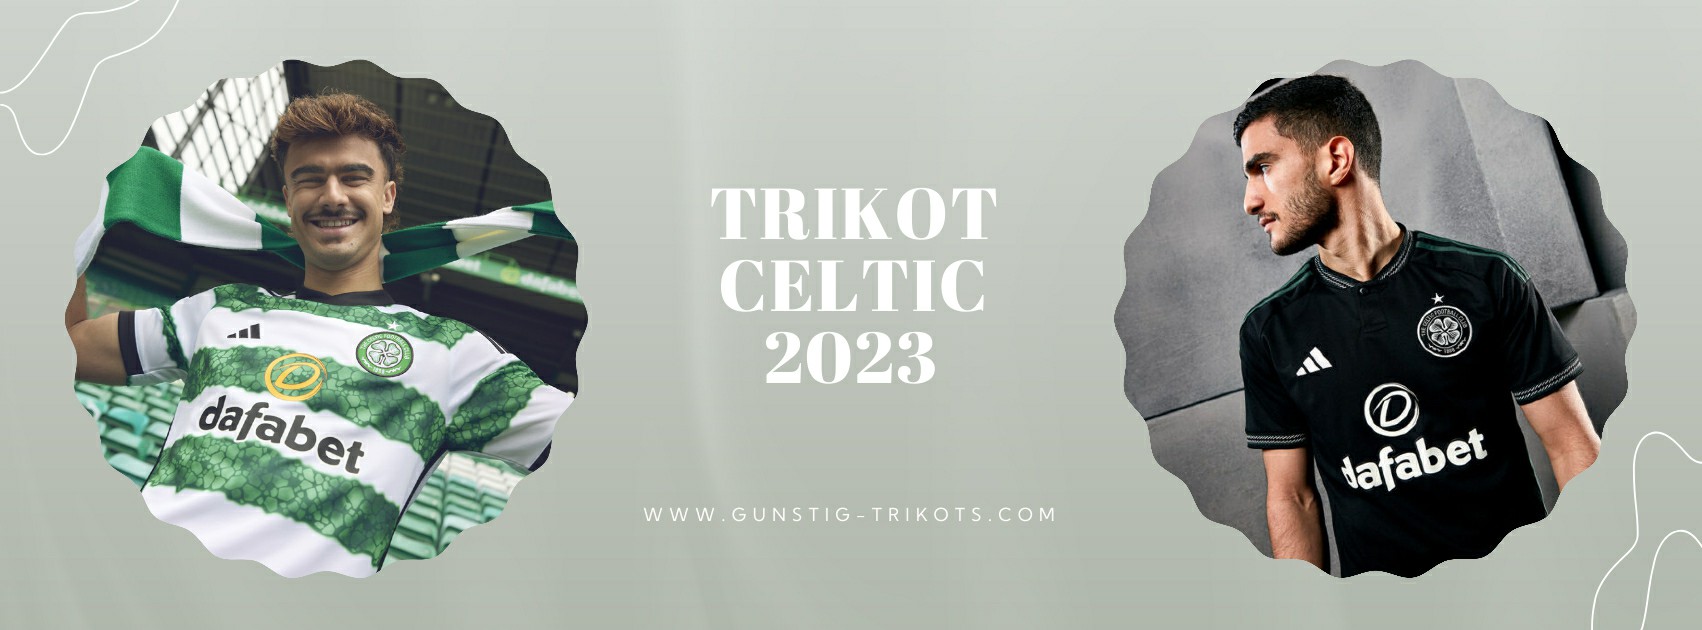 Celtic Trikot 2023-2024